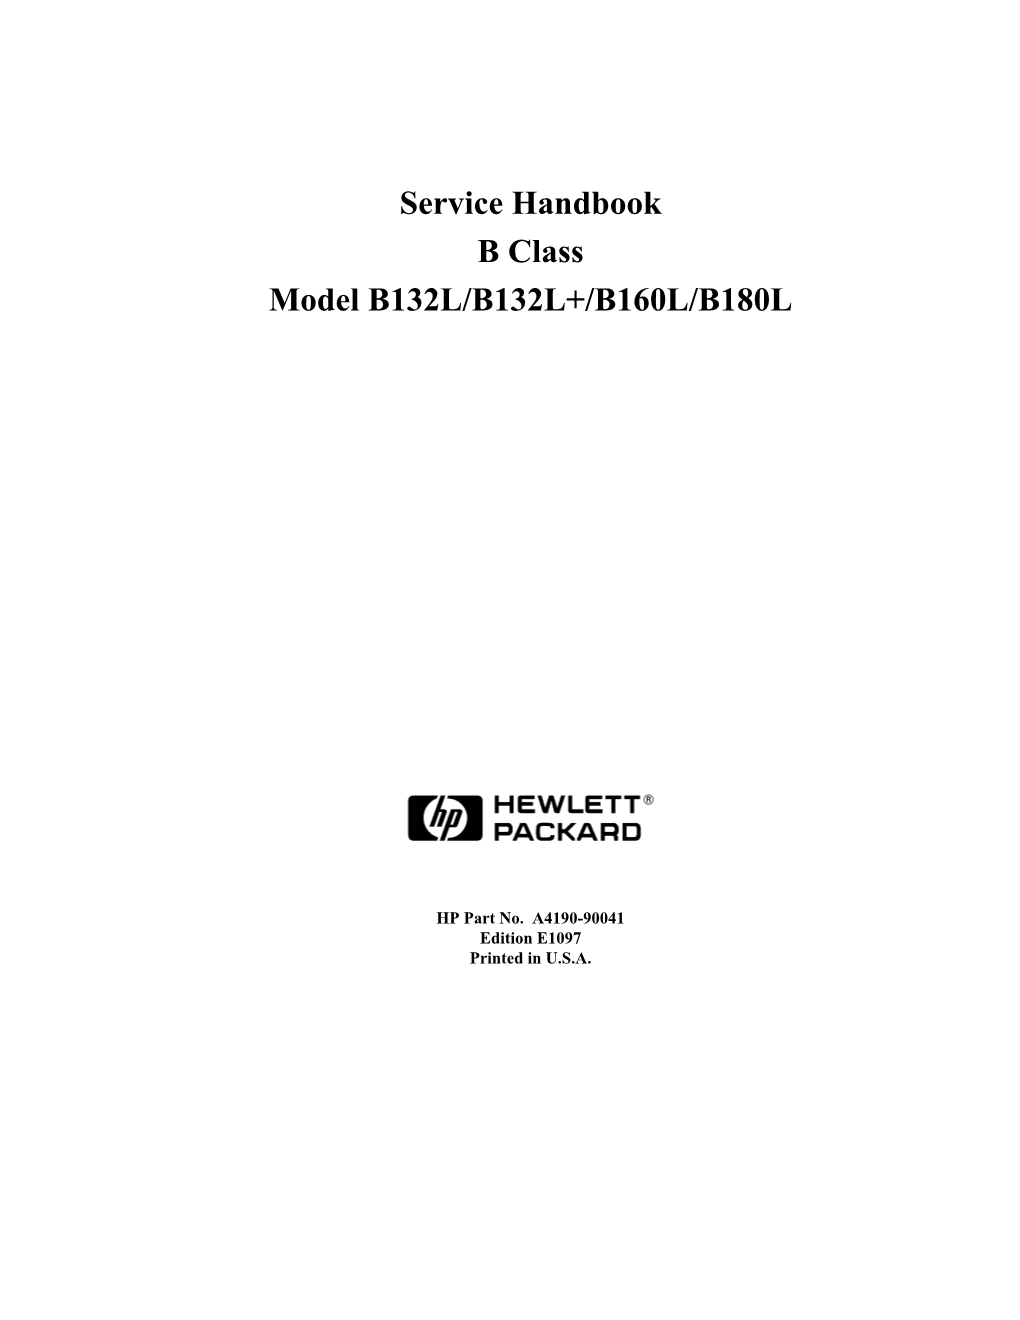 Service Handbook B Class Model B132L/B132L+/B160L/B180L